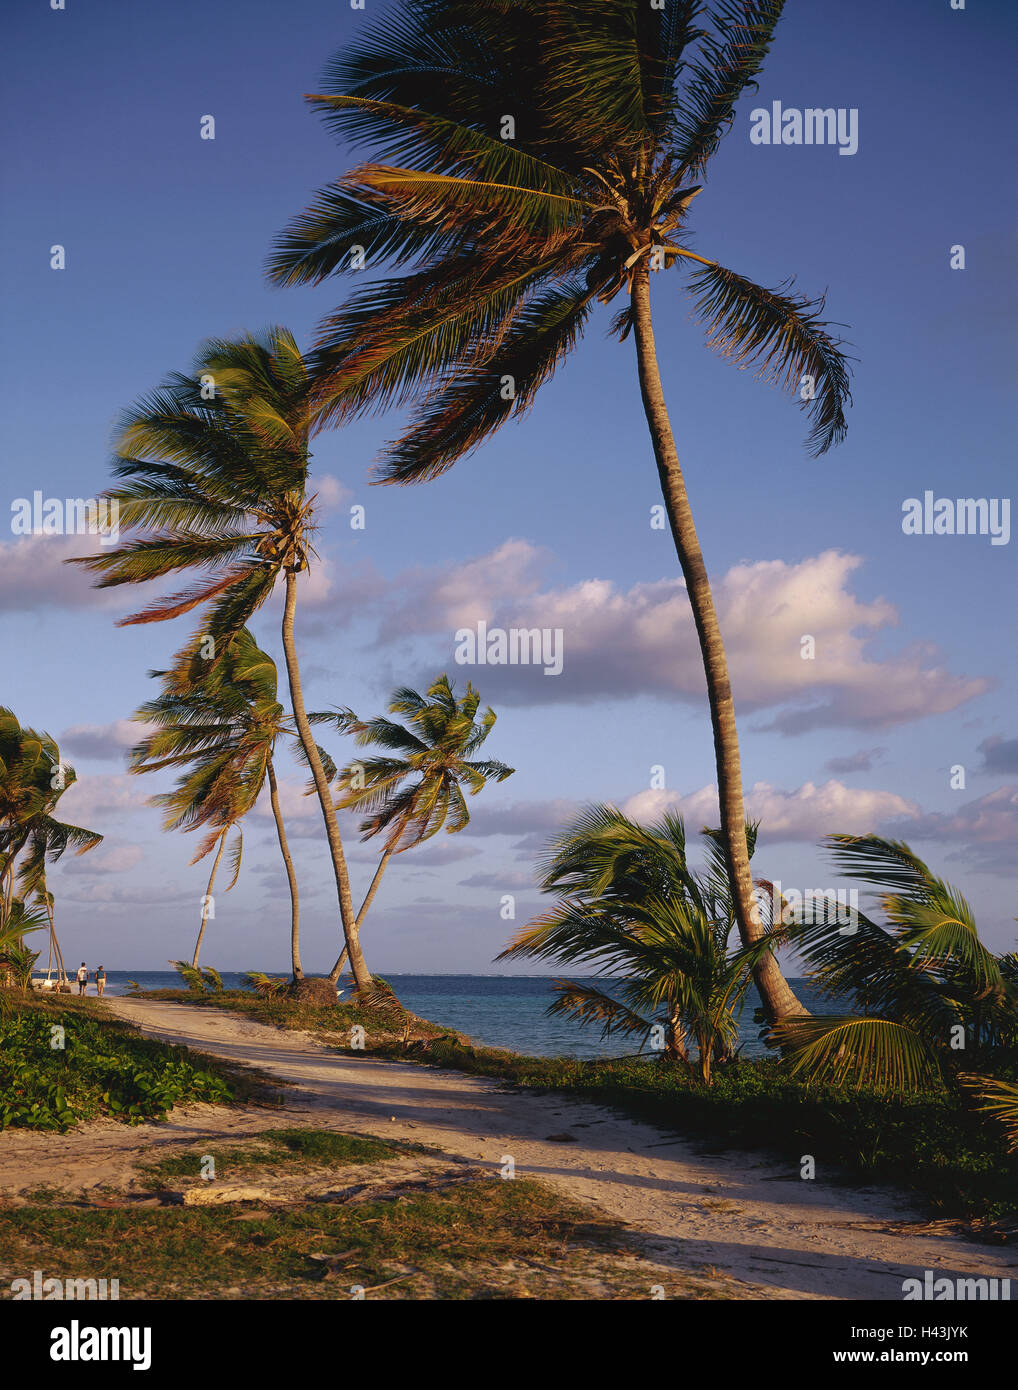 La République dominicaine, Punta Cana, plage, palmiers, way, touristiques, les Caraïbes, l'île, destination, tourisme, mer, eau, vent, vent, les arbres, les plantes, les gens, à l'extérieur, marche, sentier, Banque D'Images